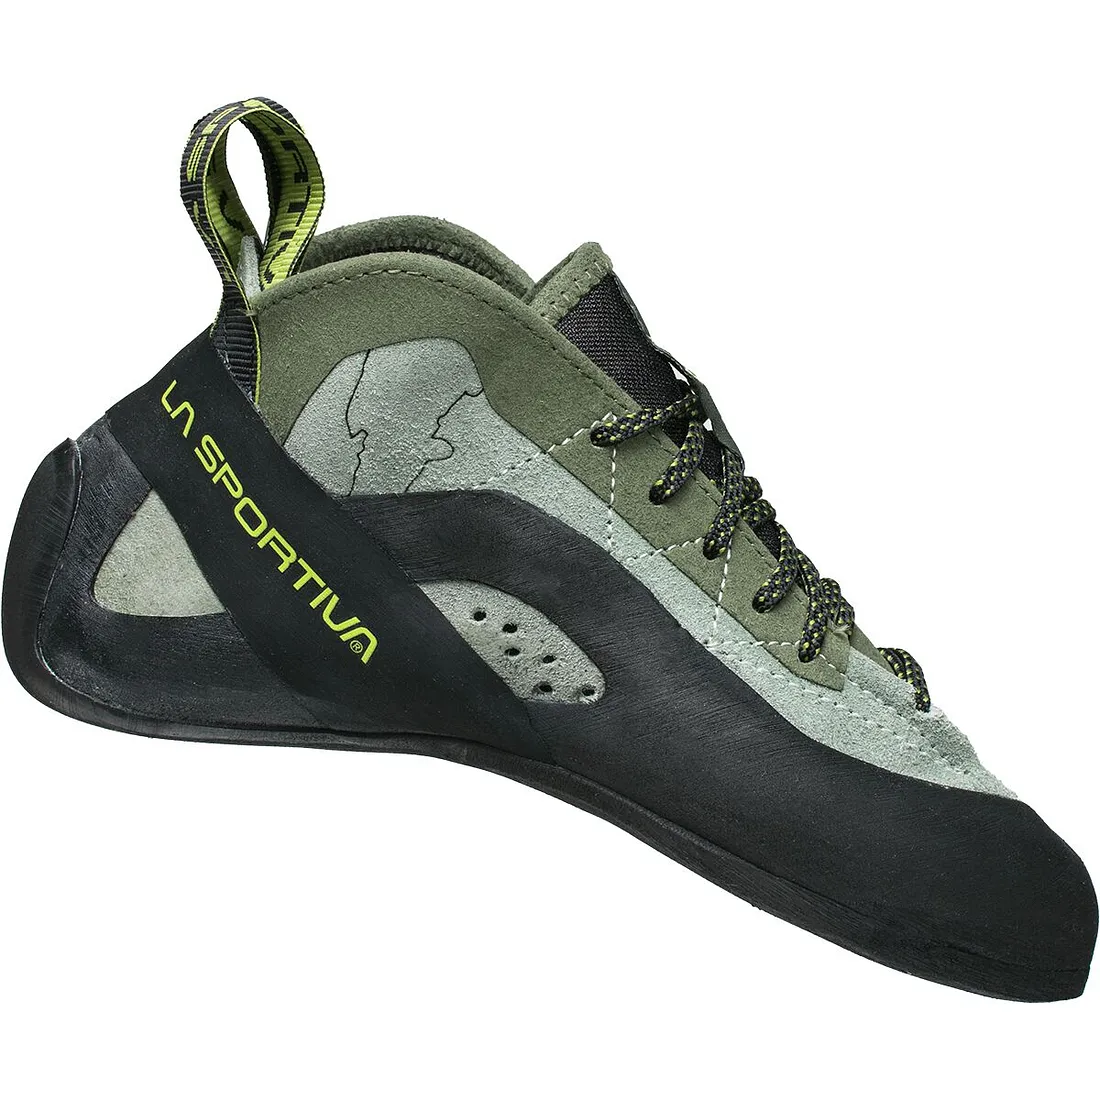 La Sportiva TC Pro Climbing Shoes